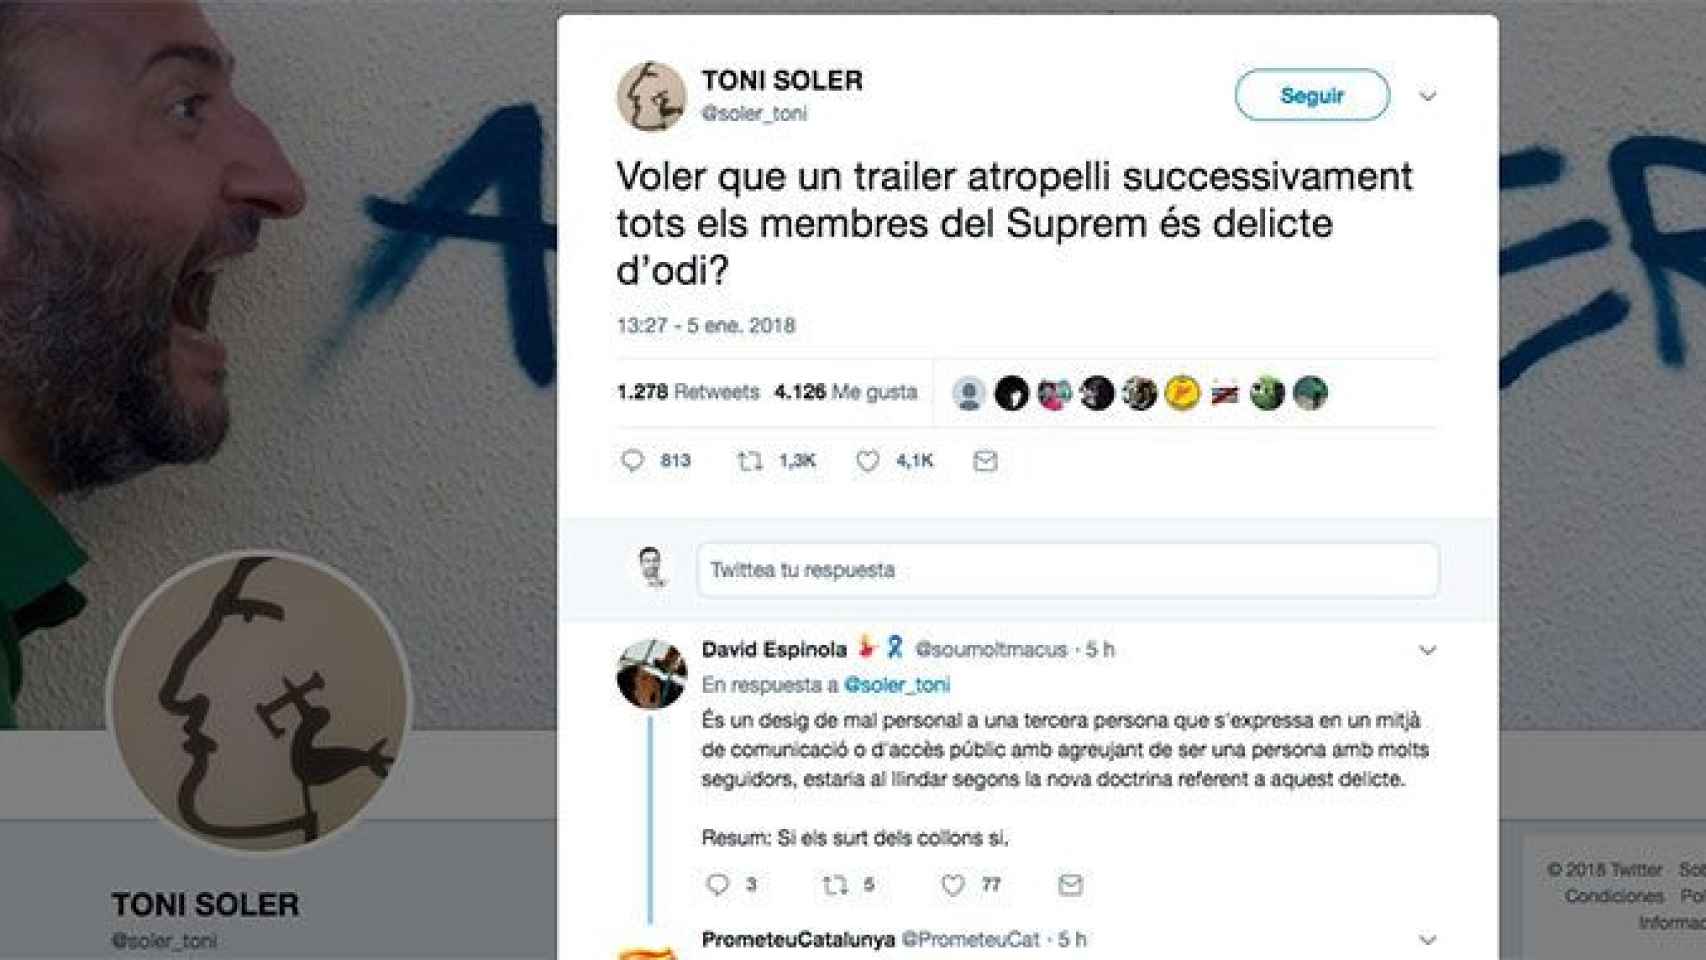 Toni Soler incendia las redes con un tuit sobre atropellar a los miembros del Supremo